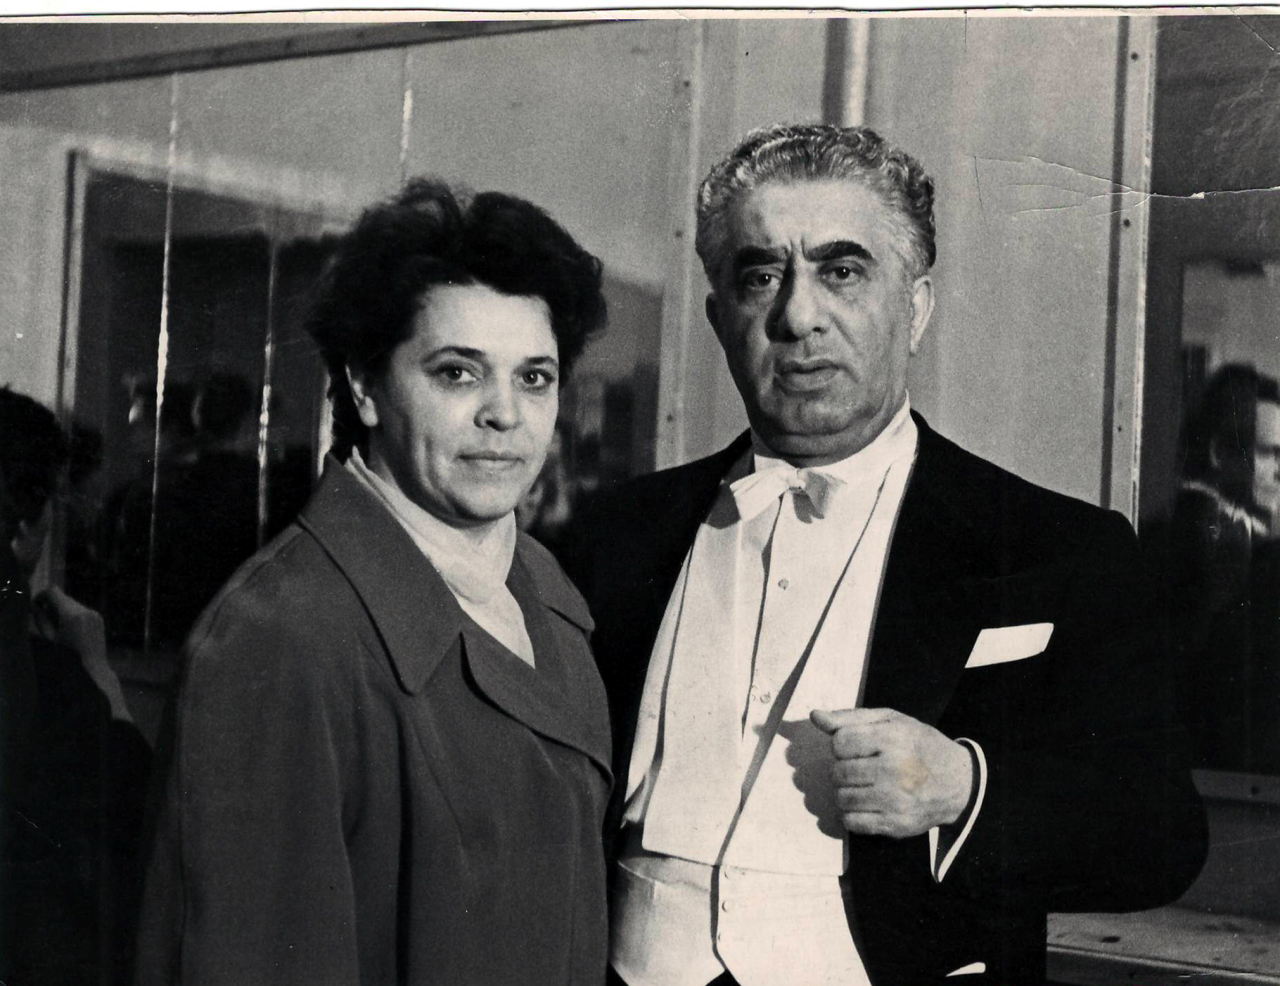 Լուսանկար. Ա. Խաչատրյանը երգչուհի Վ. Դրյախլովայի հետ Կրասոնյարսկի Երաժշտական կոմեդիայի թատրոնի ճեմասրահում